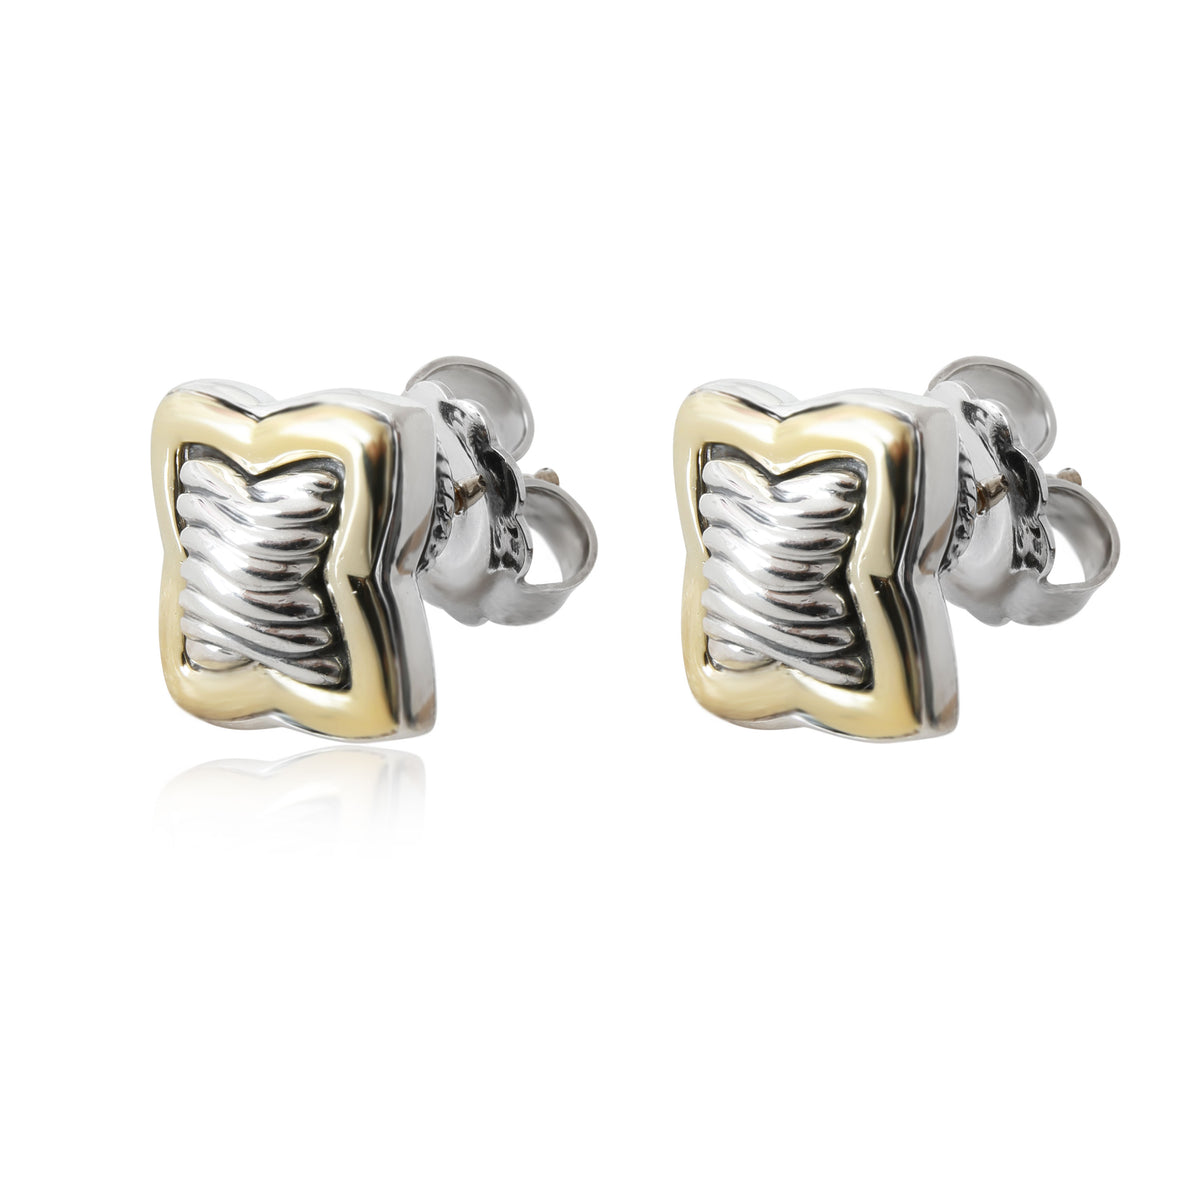 David Yurman Quatrefoil Stud Earring in 18k Gold/Sterling